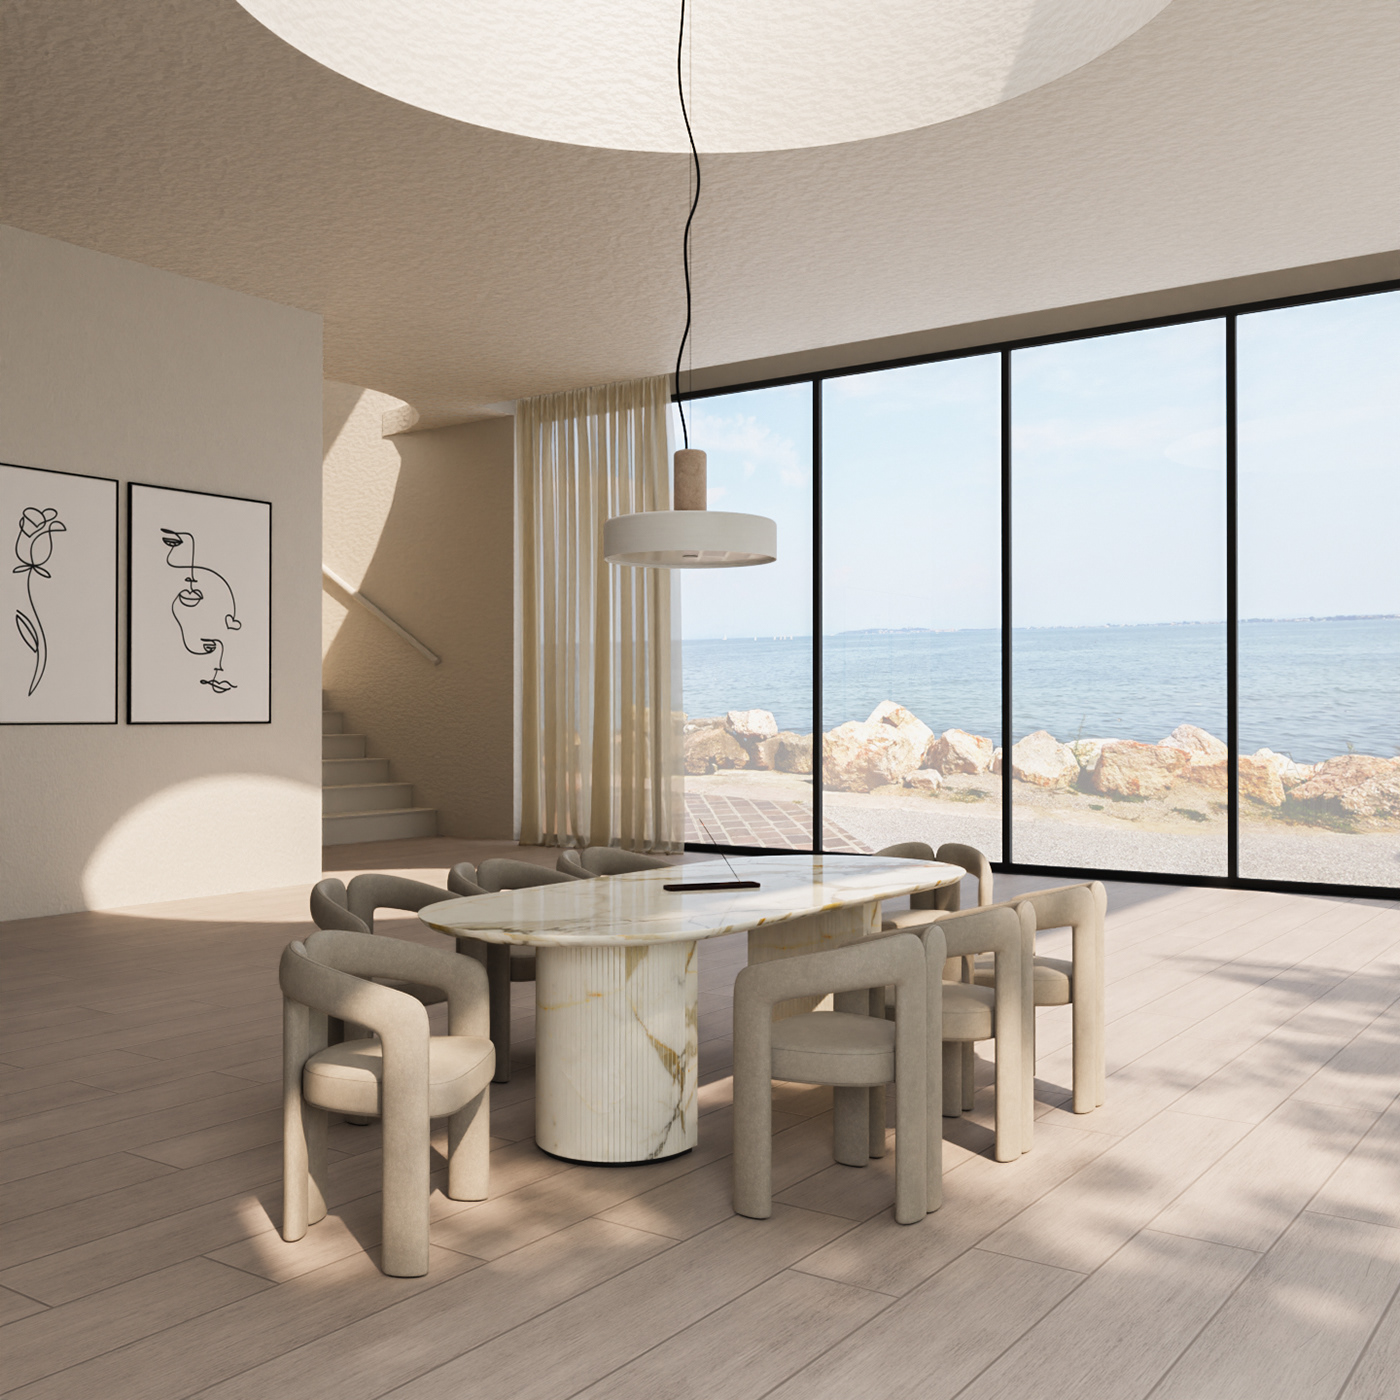 3D 3d modeling architecture archviz blender CGI indoor interior design  Render visualization